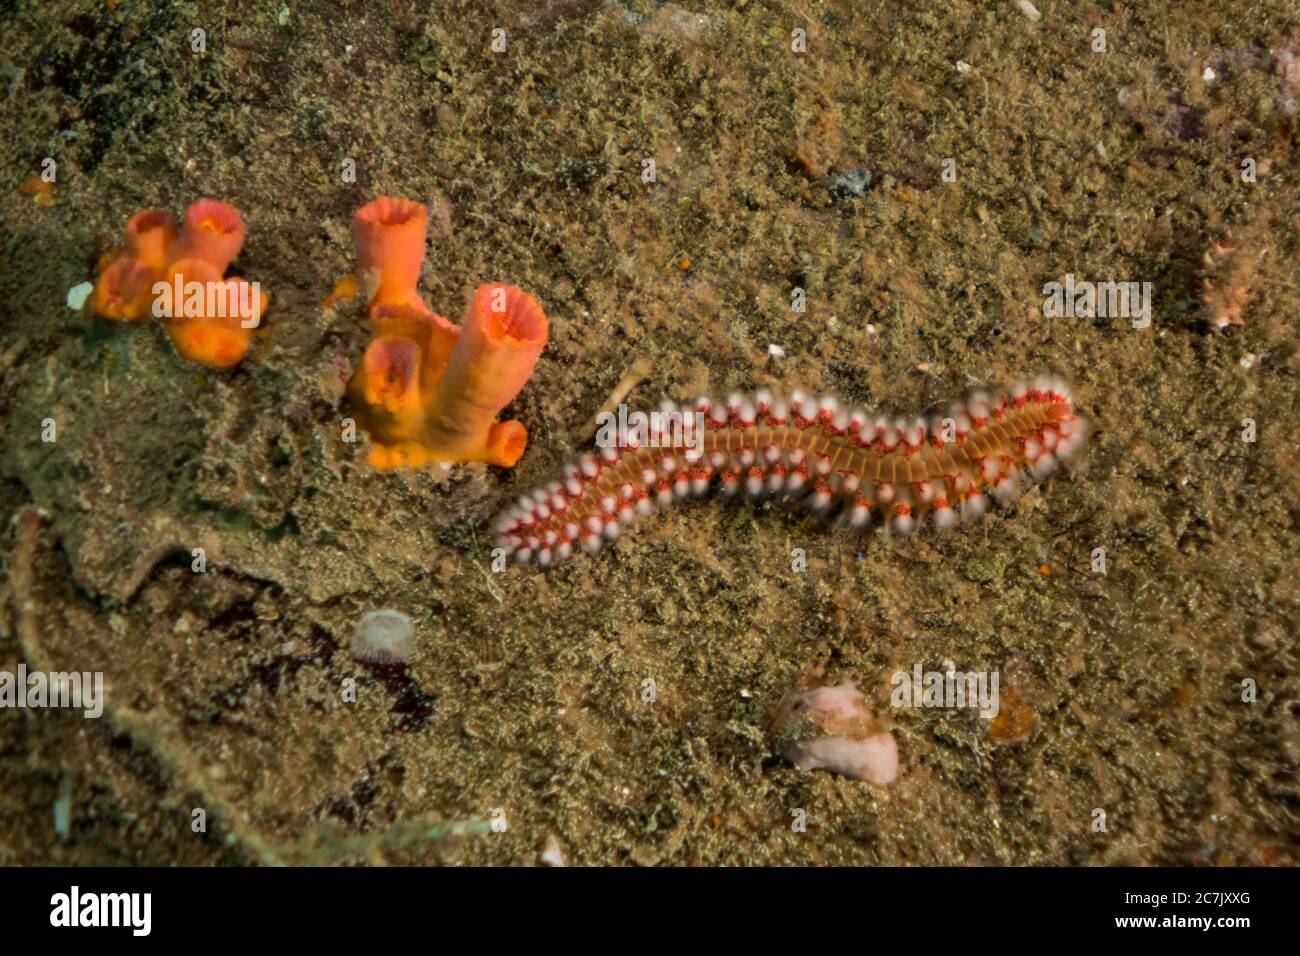 Bärtiger Feuerwurm mit roten Schwämmen im karibischen Meer. Unterwasserwelt Stockfoto